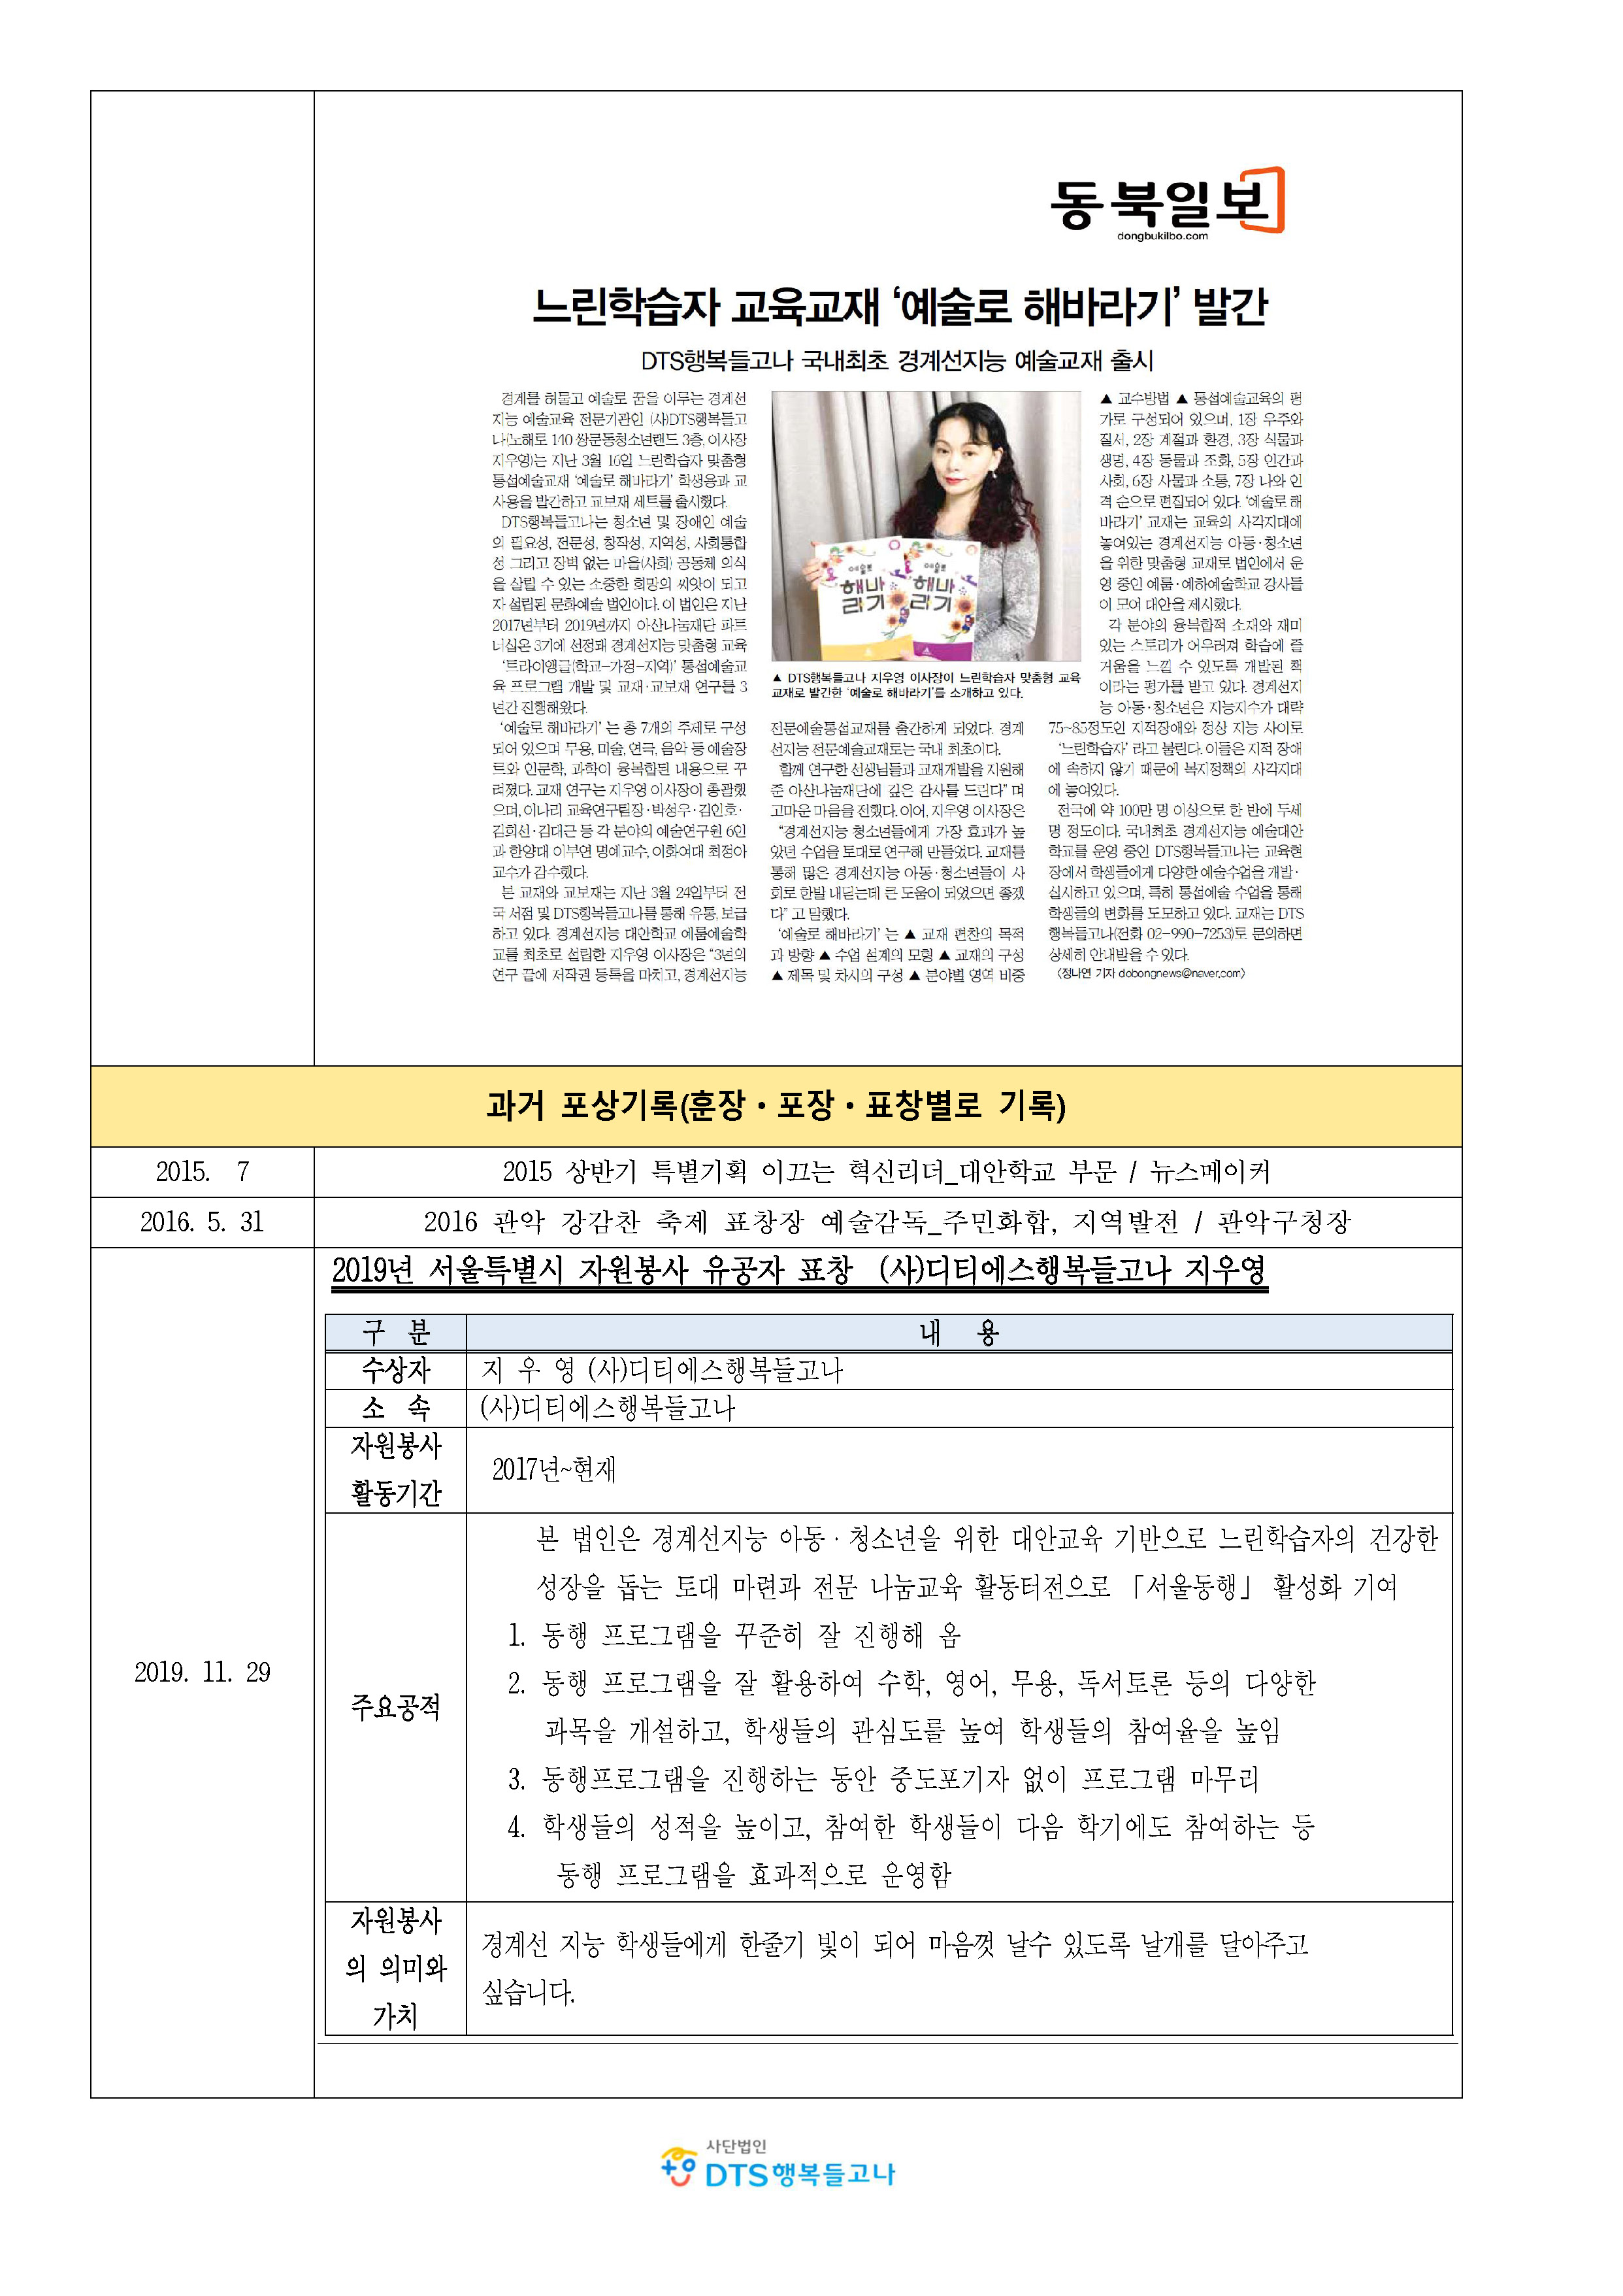 2020_ 사단법인 DTS행복들고나_소개(사회공헌)_페이지_5.jpg